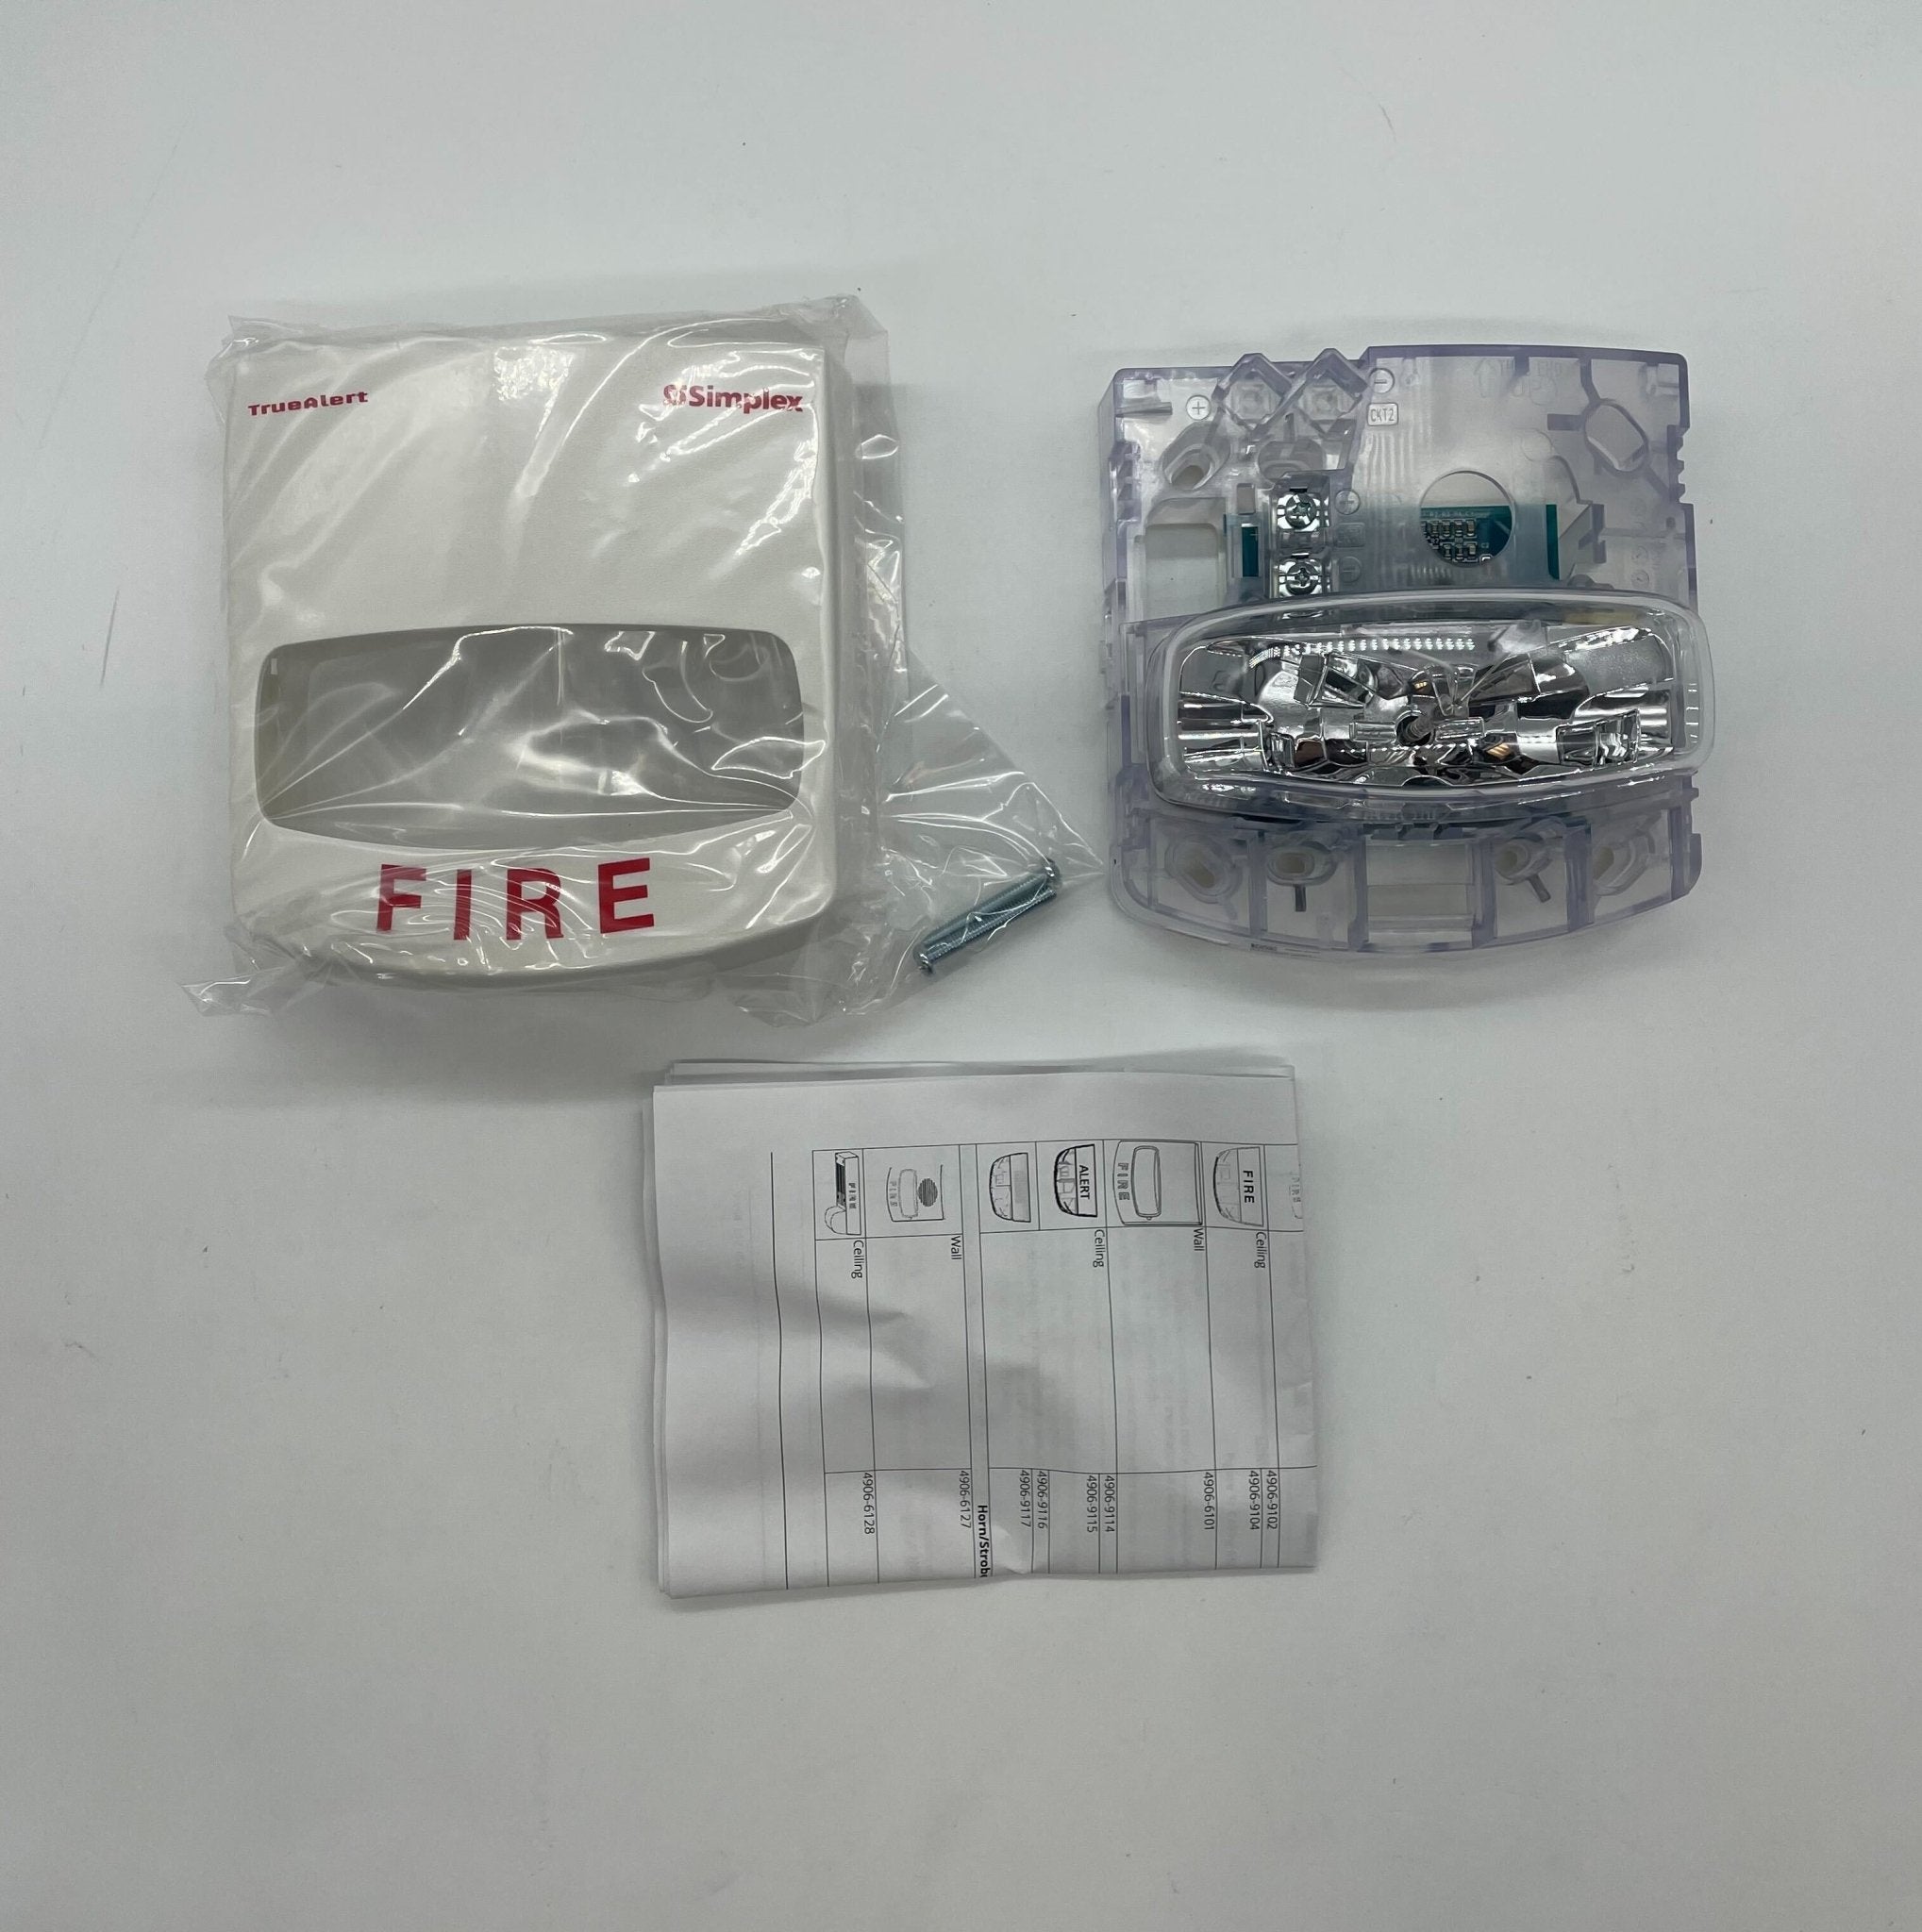 Simplex 4906-9103 Multi-Candela Strobe White - The Fire Alarm Supplier